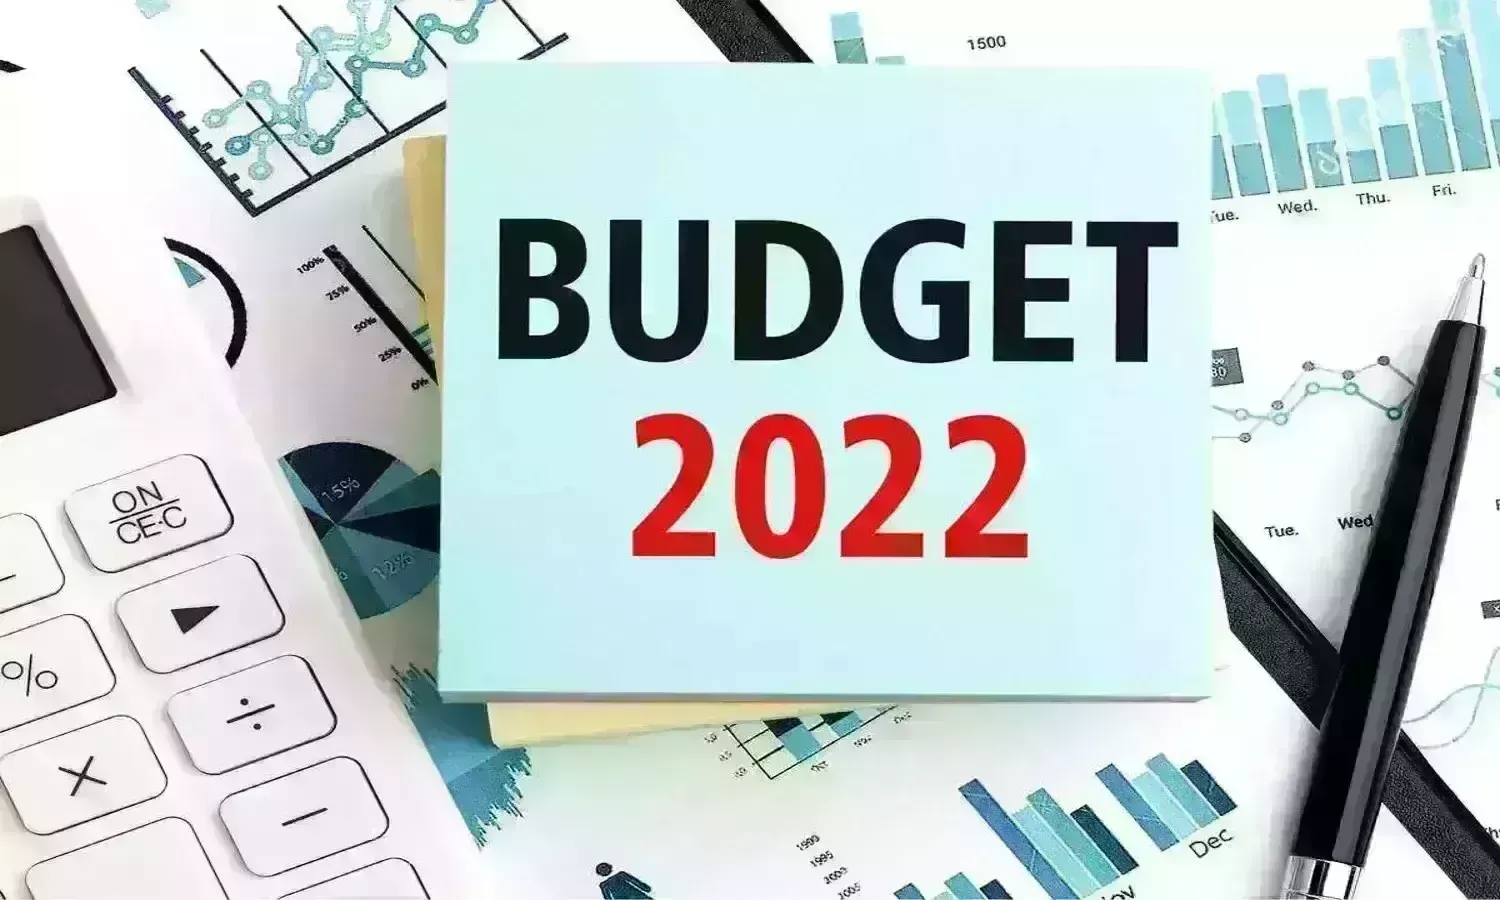 Union Budget 2022: कैसा रहा 2022-23 का बजट? किस योजना को कितना रहा आवंटन?